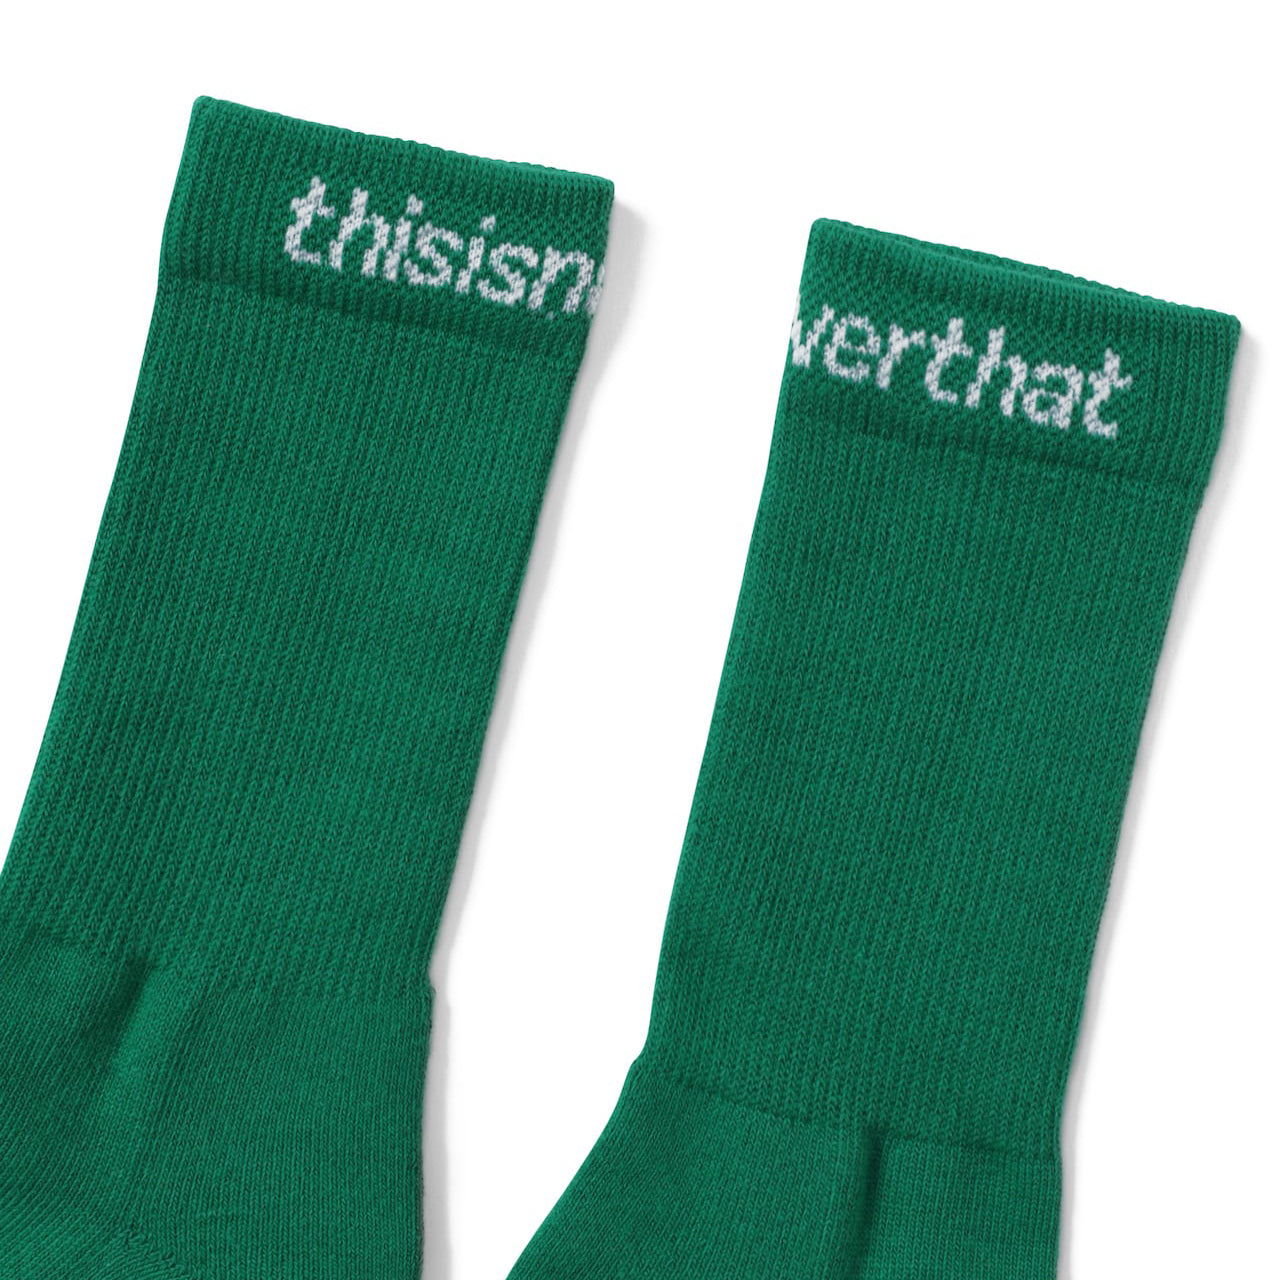 thisisneverthat SP-Logo Socks 3 Pack